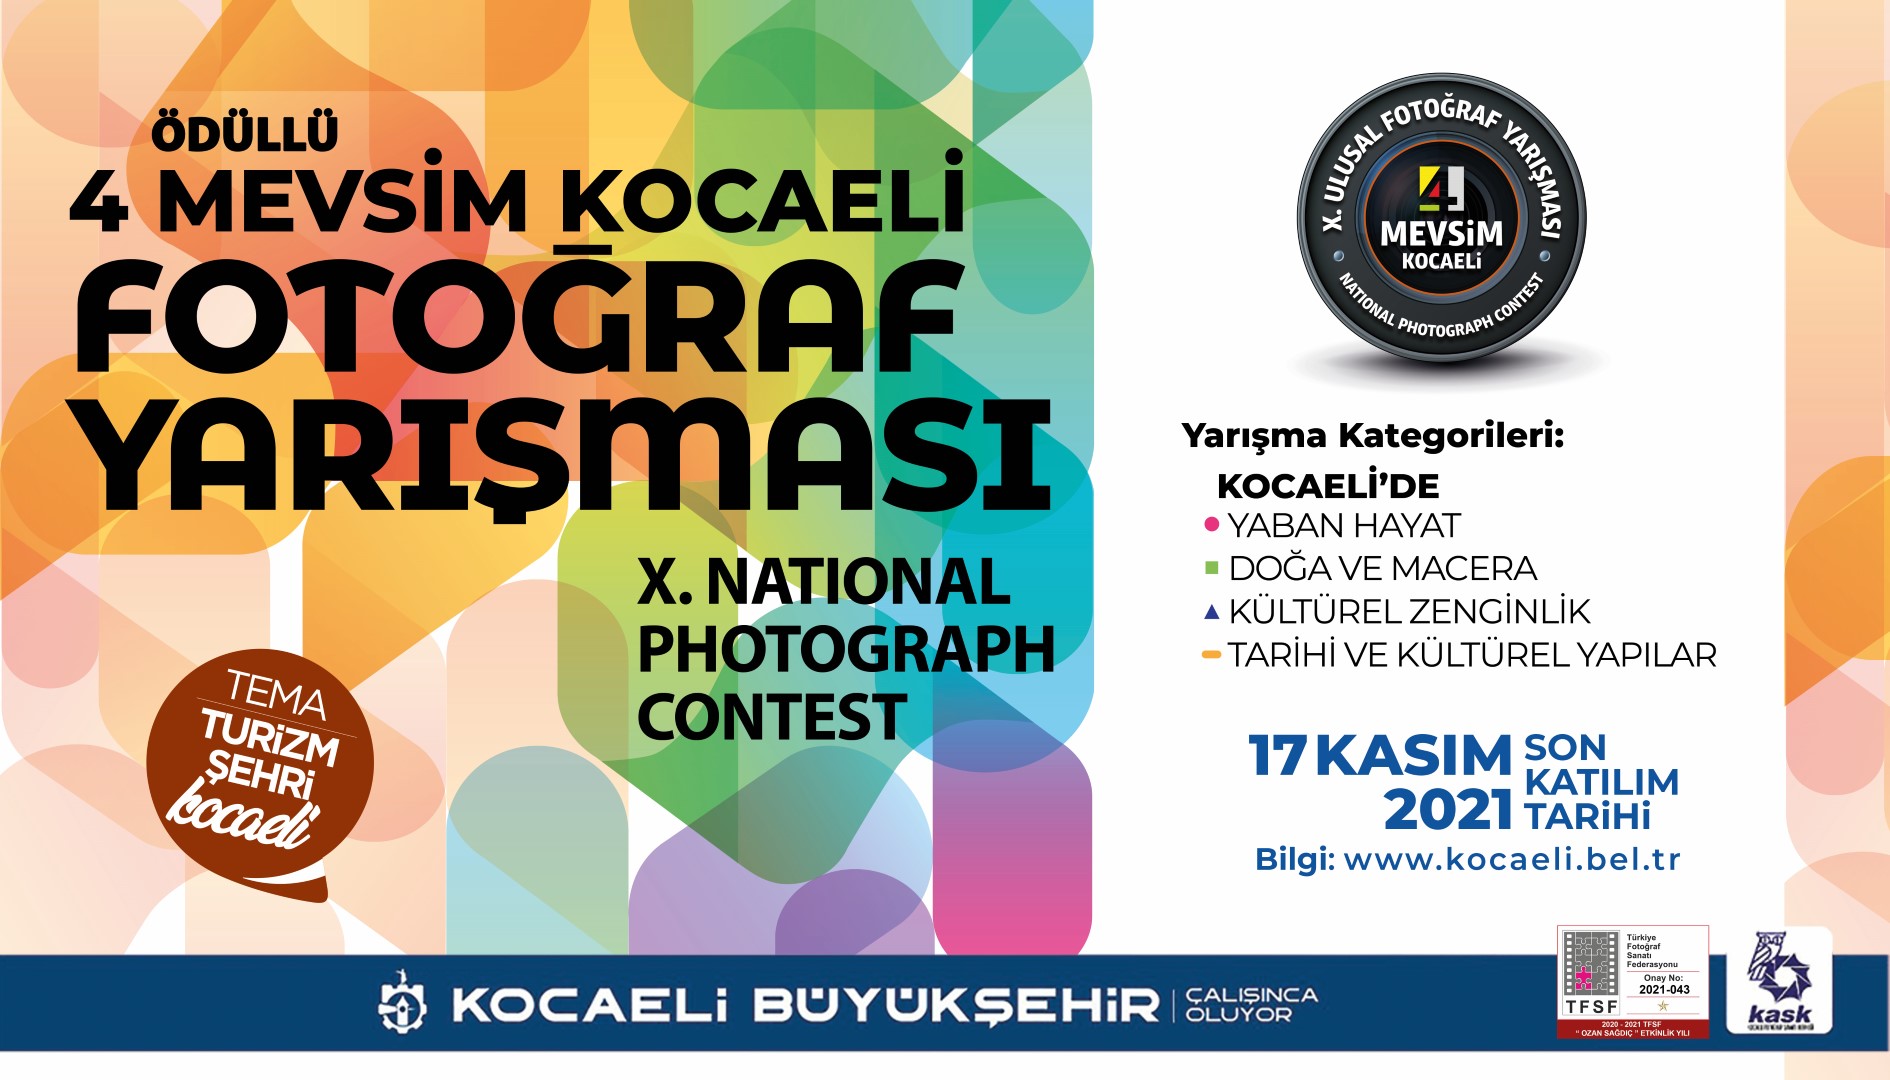 4 Mevsim Kocaeli Fotoğraf Yarışmasına katılım için son 2 hafta